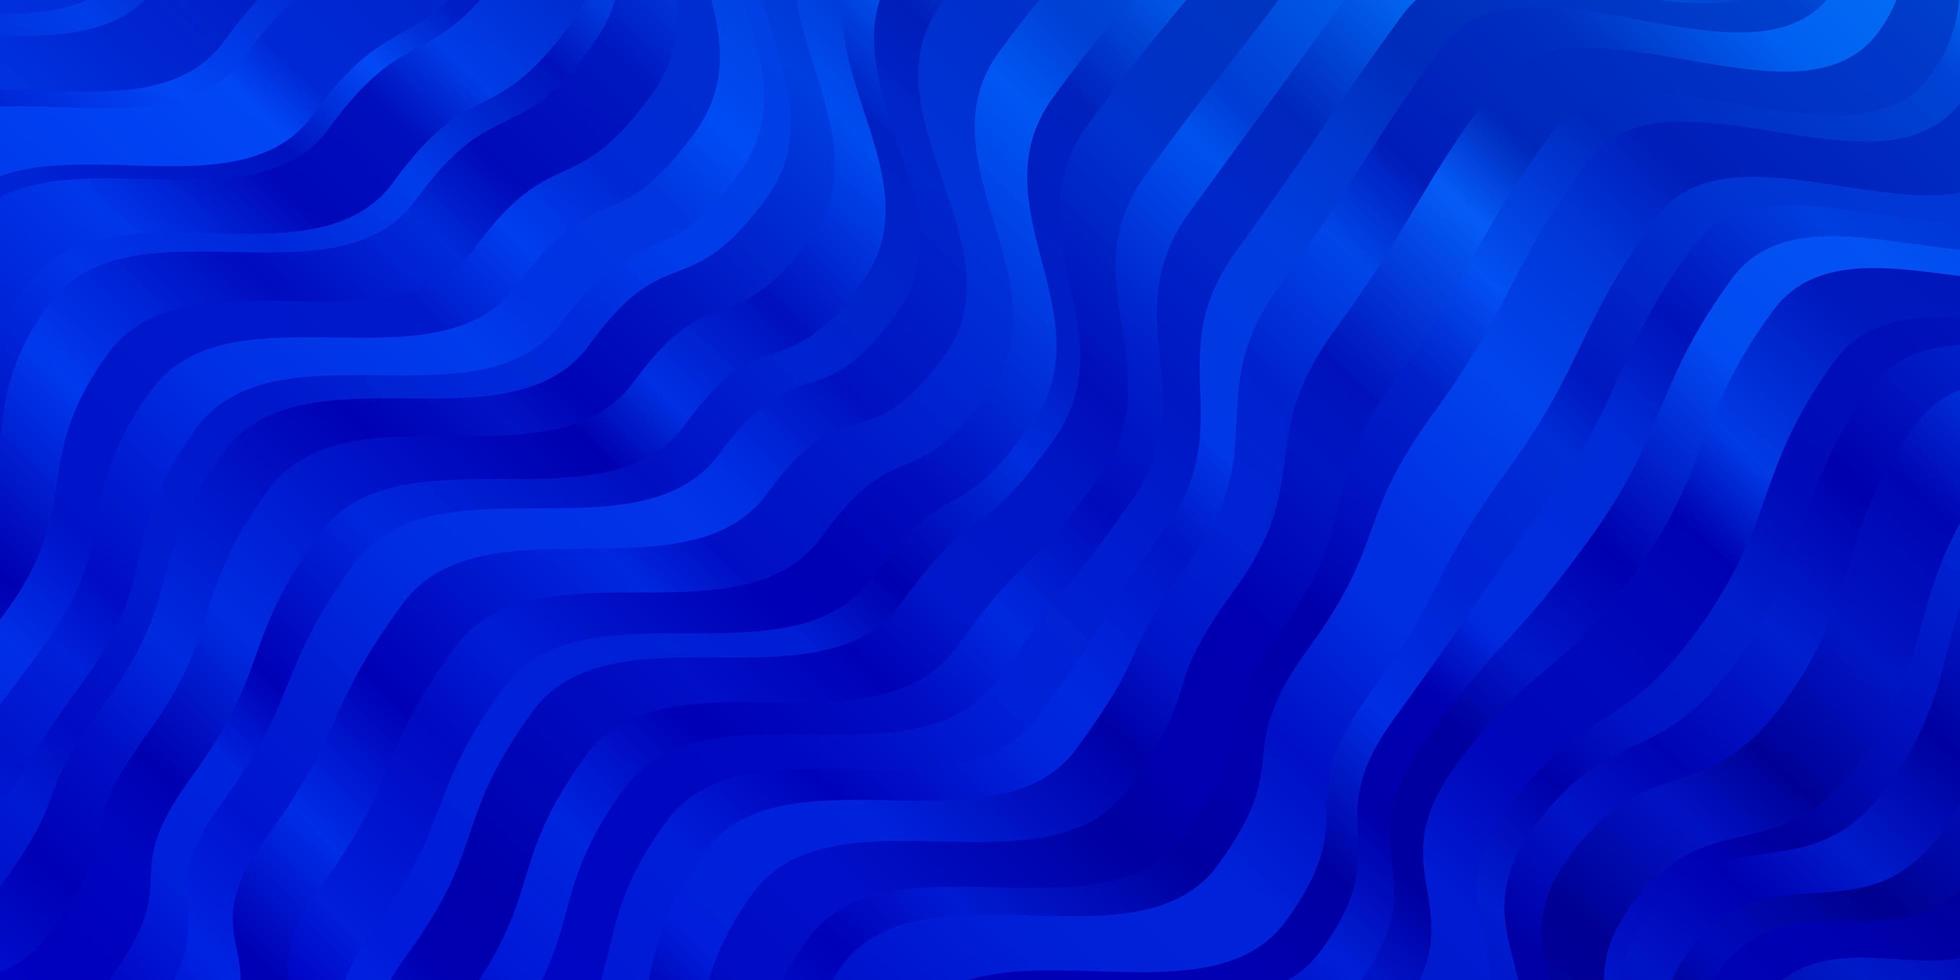 ljusblå vektormall med böjda linjer. vektor